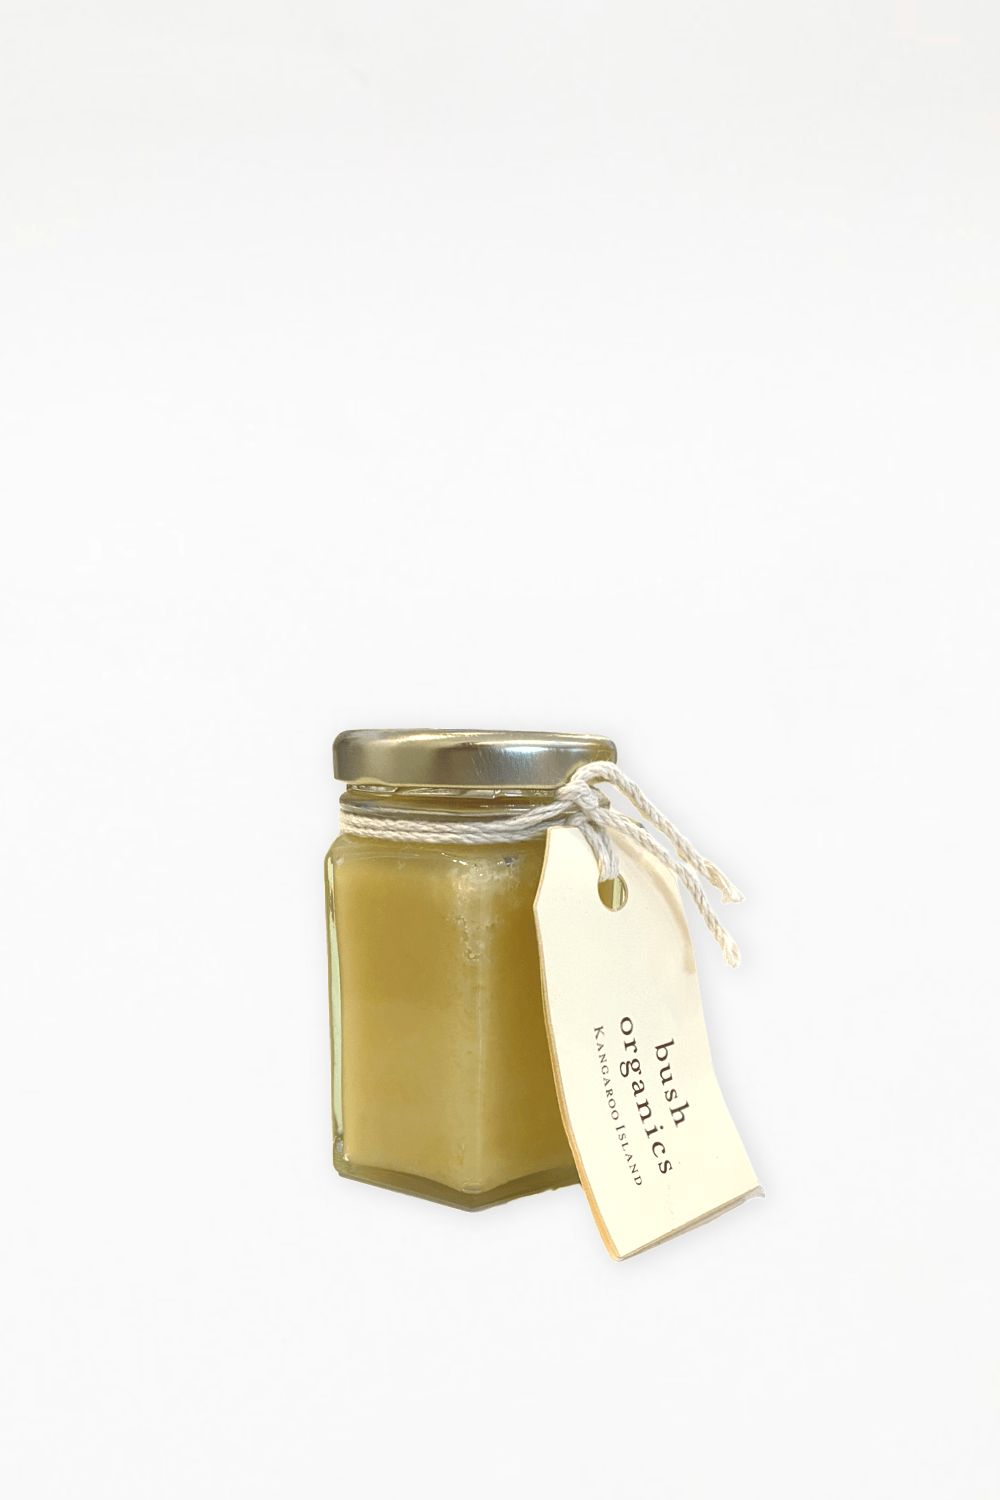 Bush Organics - Raw Organic Honey 150g - Ensemble Studios